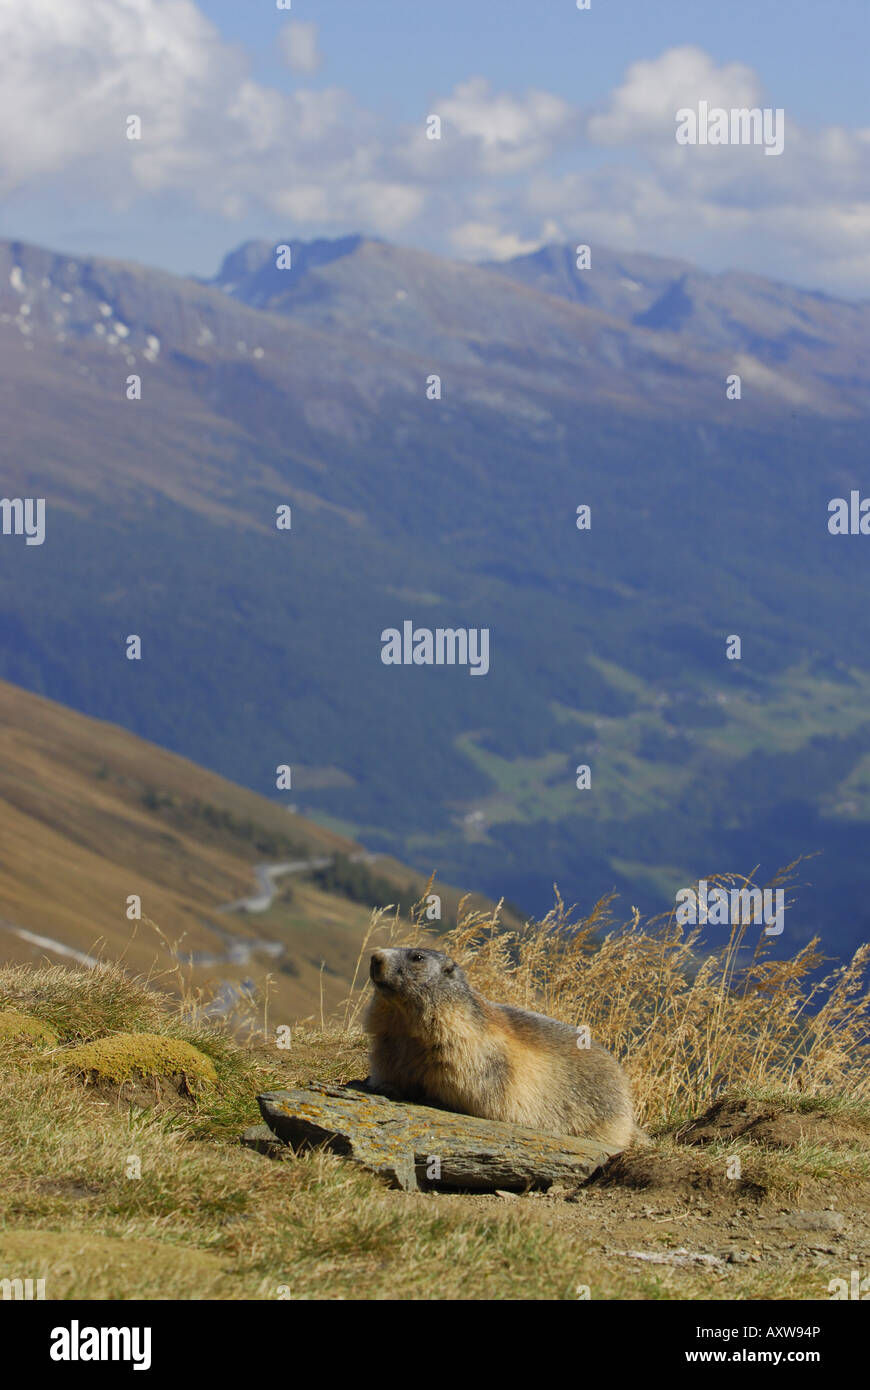 Marmotte des Alpes (Marmota marmota), marmotte adultes assis à son terrier au Parc National Hohe Tauern, l'Autriche, le Tyrol, NP Hohe Tauern Banque D'Images